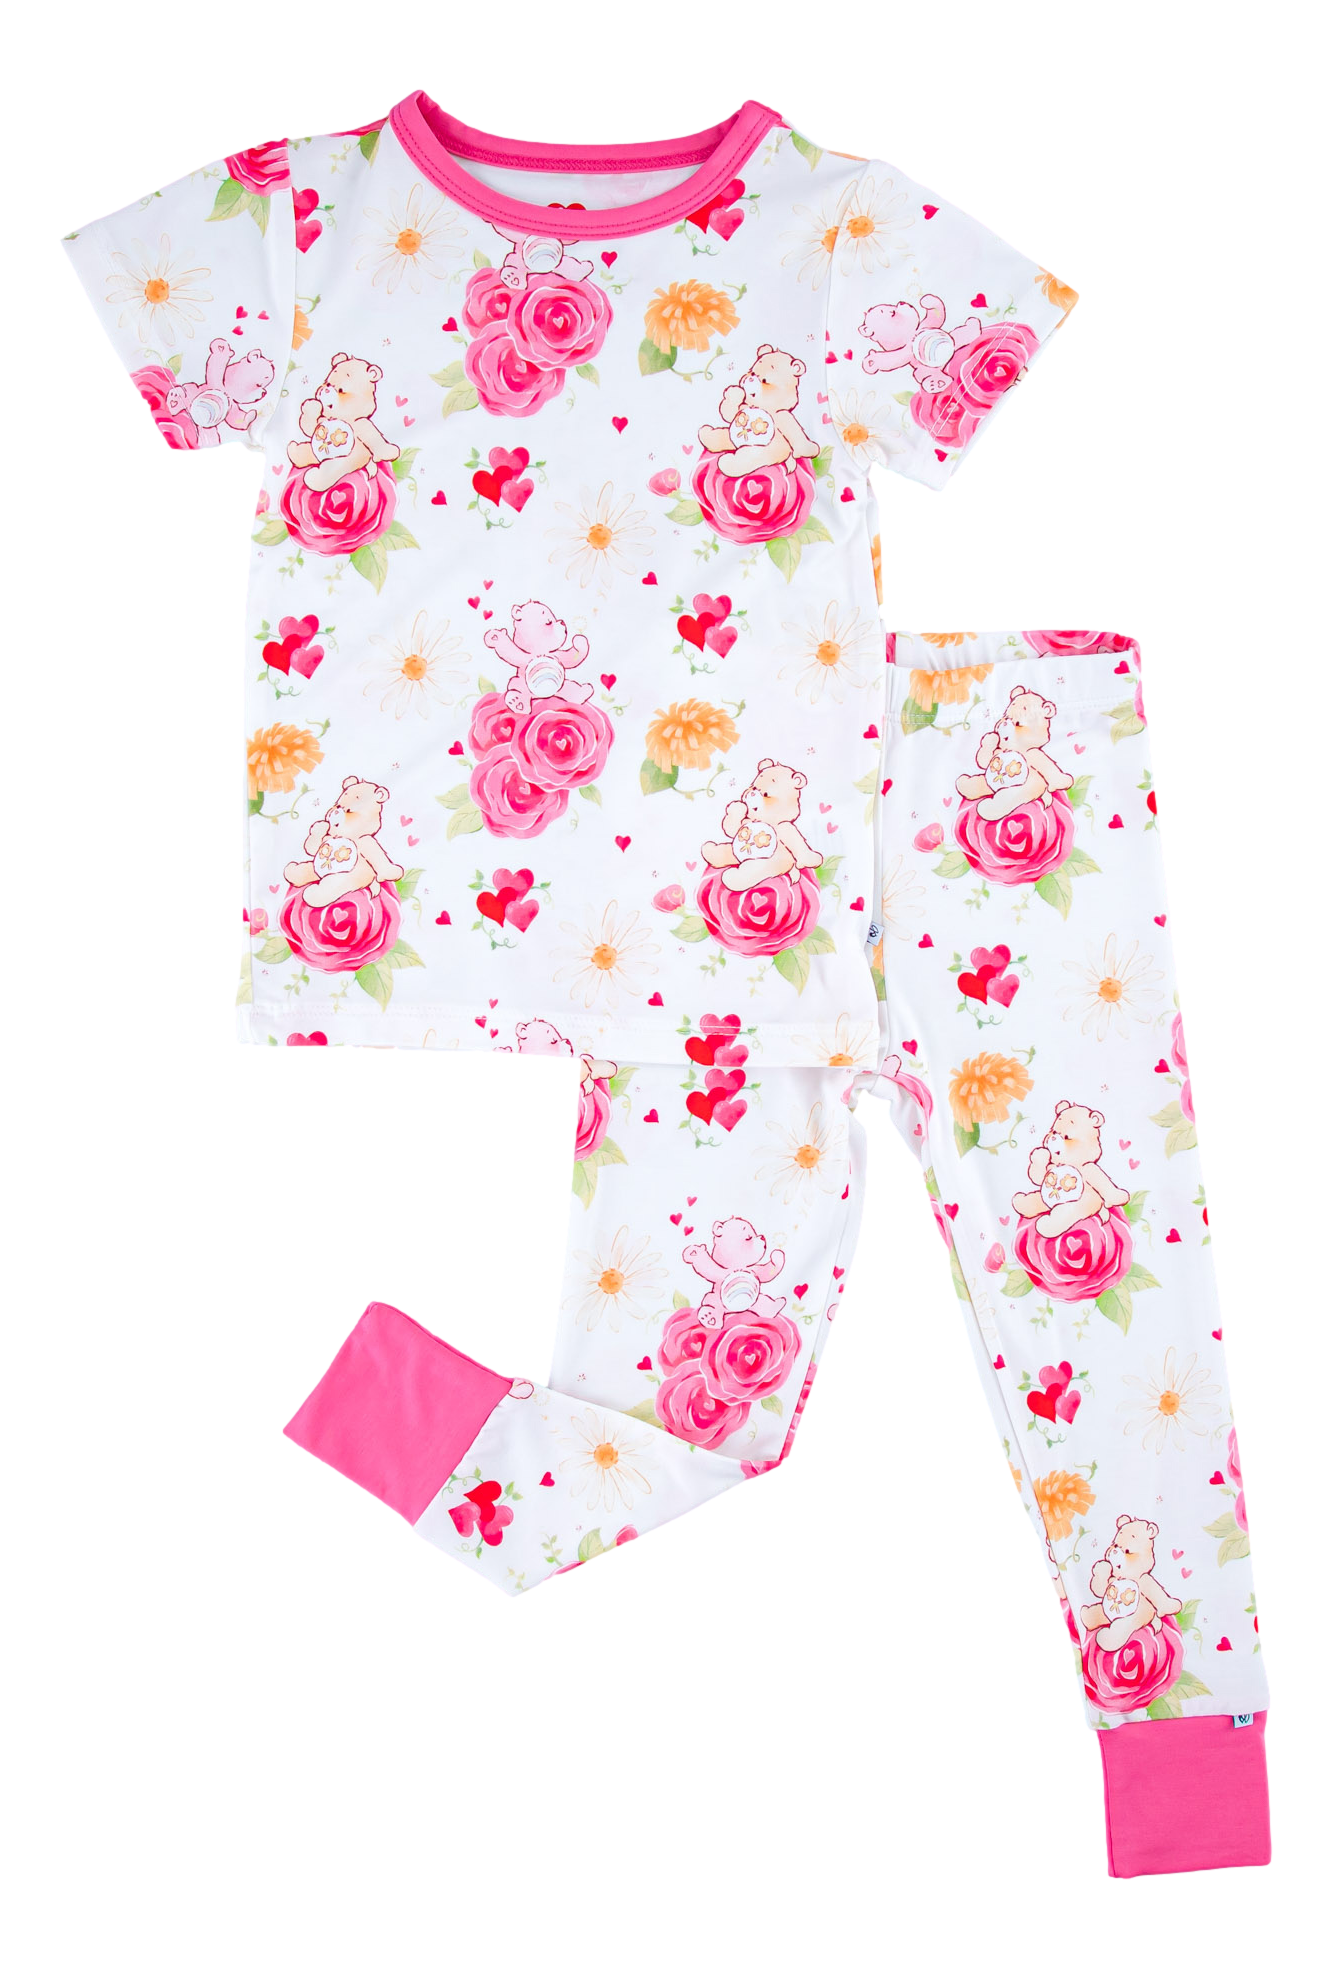 Care Bears Baby™ blooms 2-piece pajamas